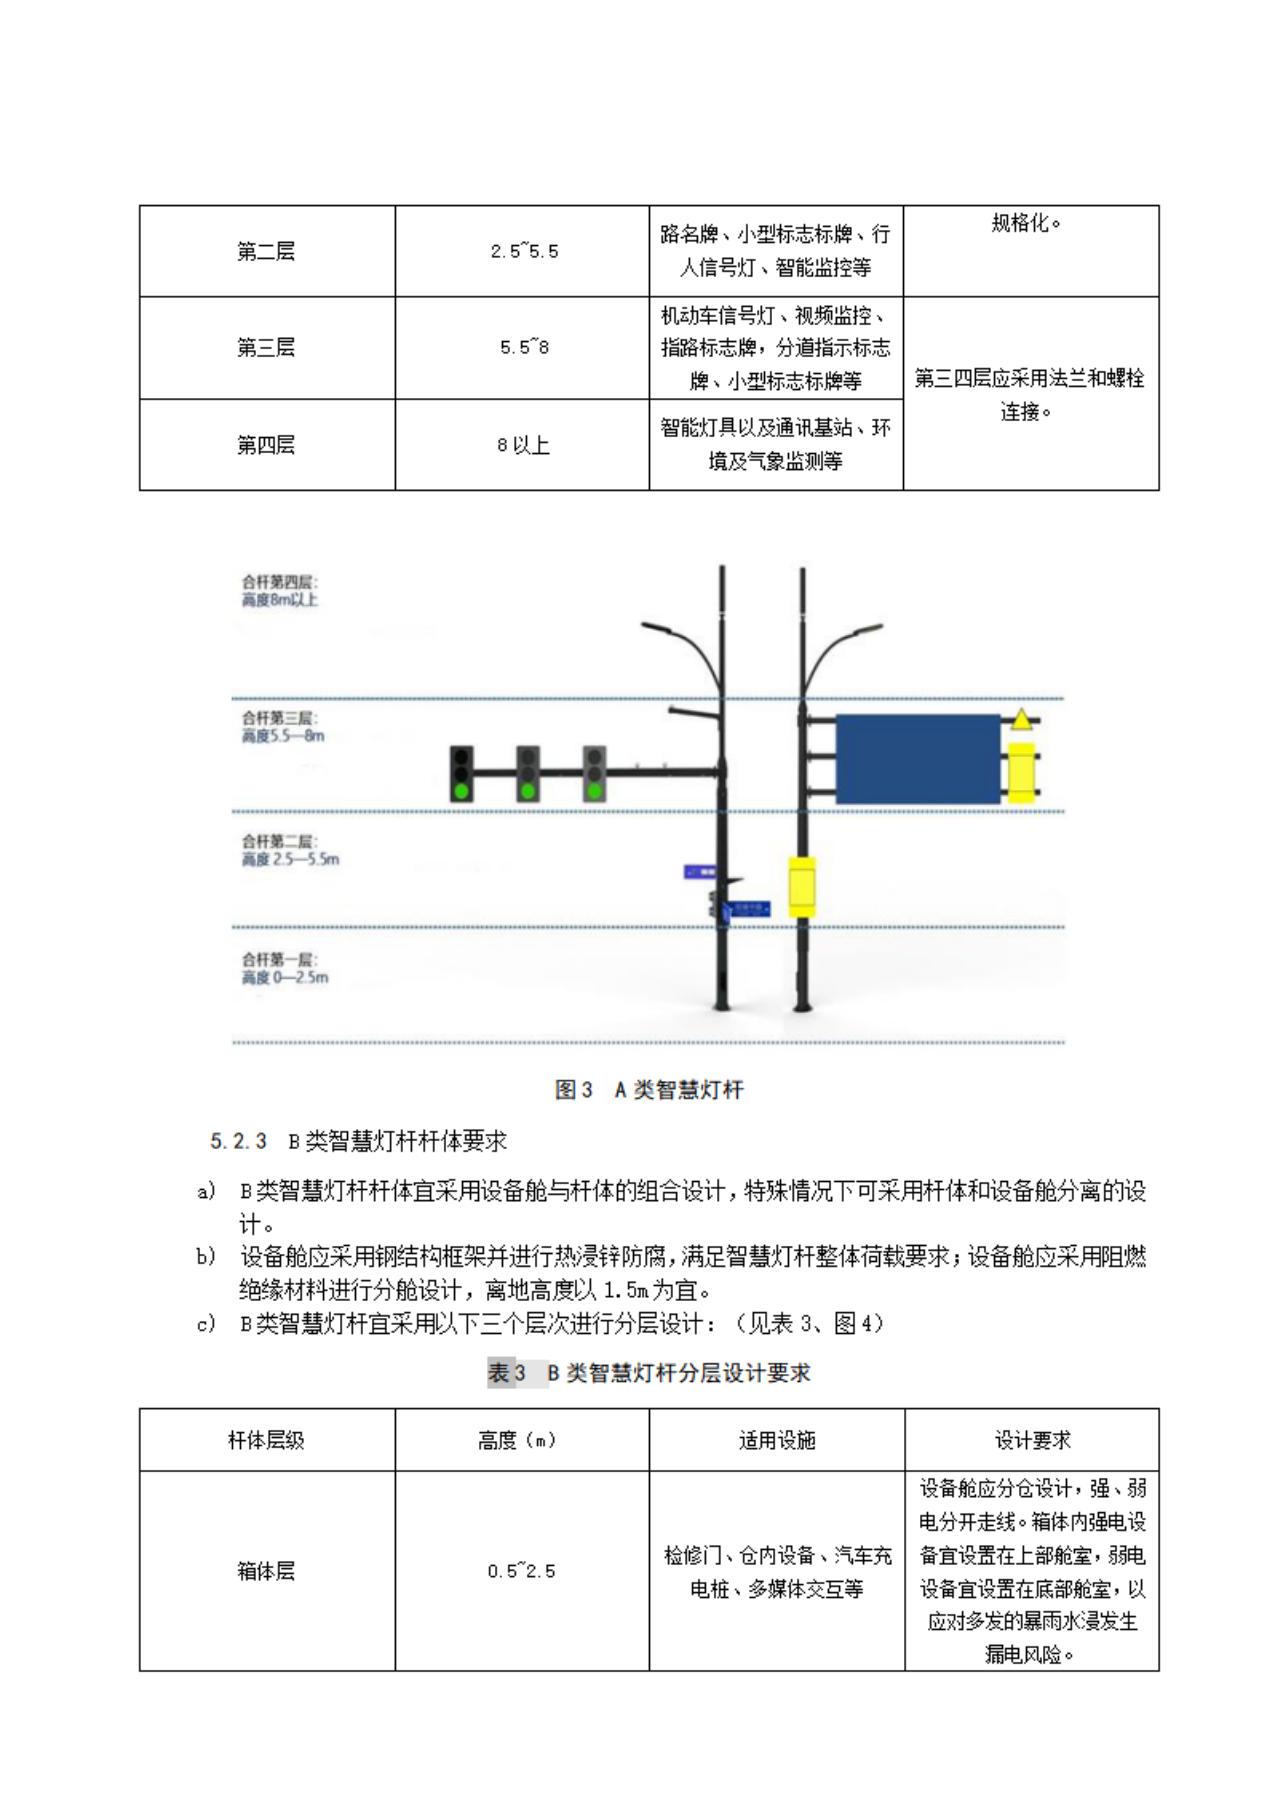 扬州市智慧灯杆应用导则（征求意见稿）_11.jpg